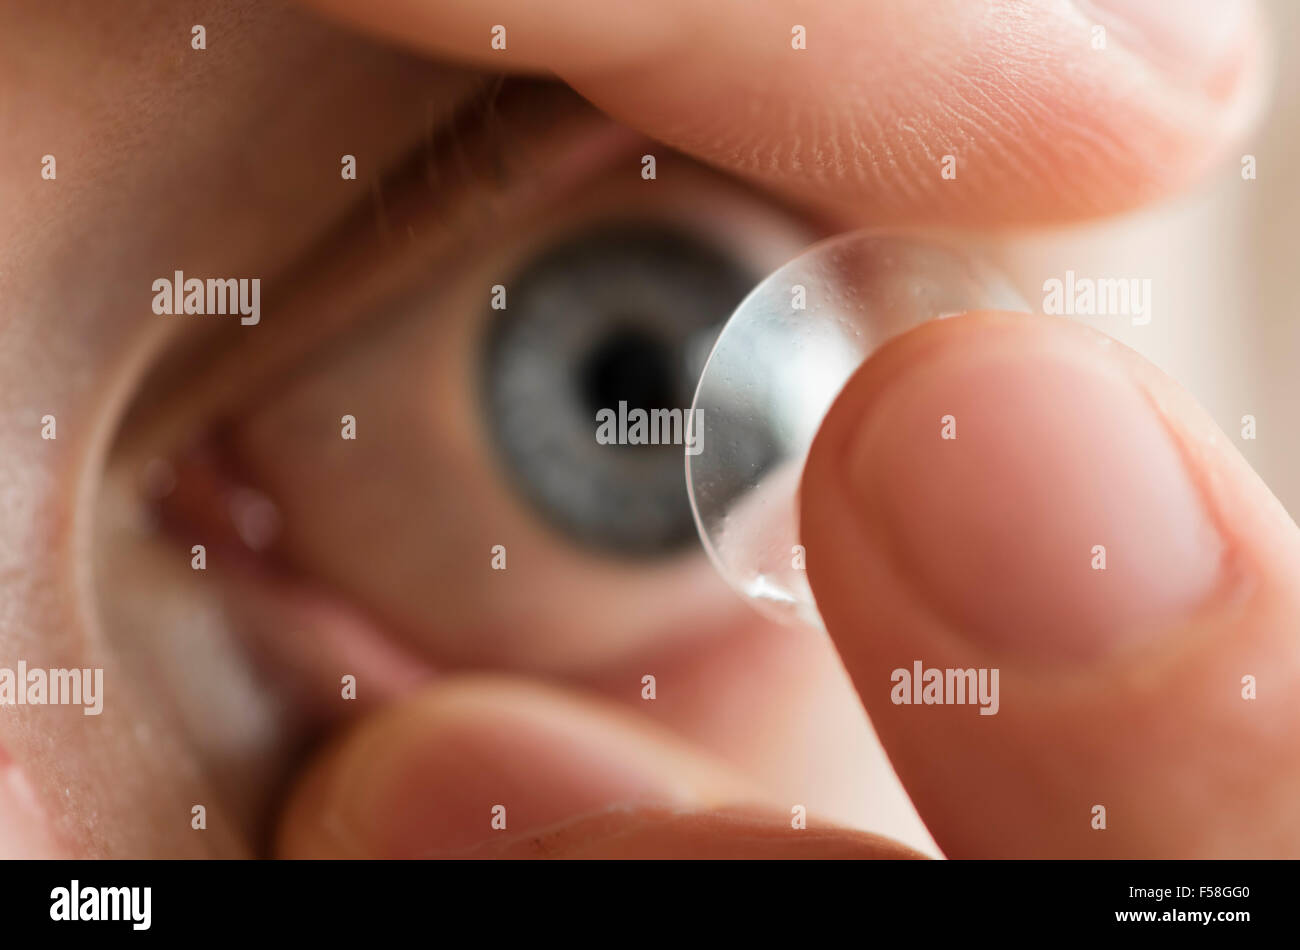 Un homme est l'insertion d'une lentille de contact sur l'œil gauche. Banque D'Images